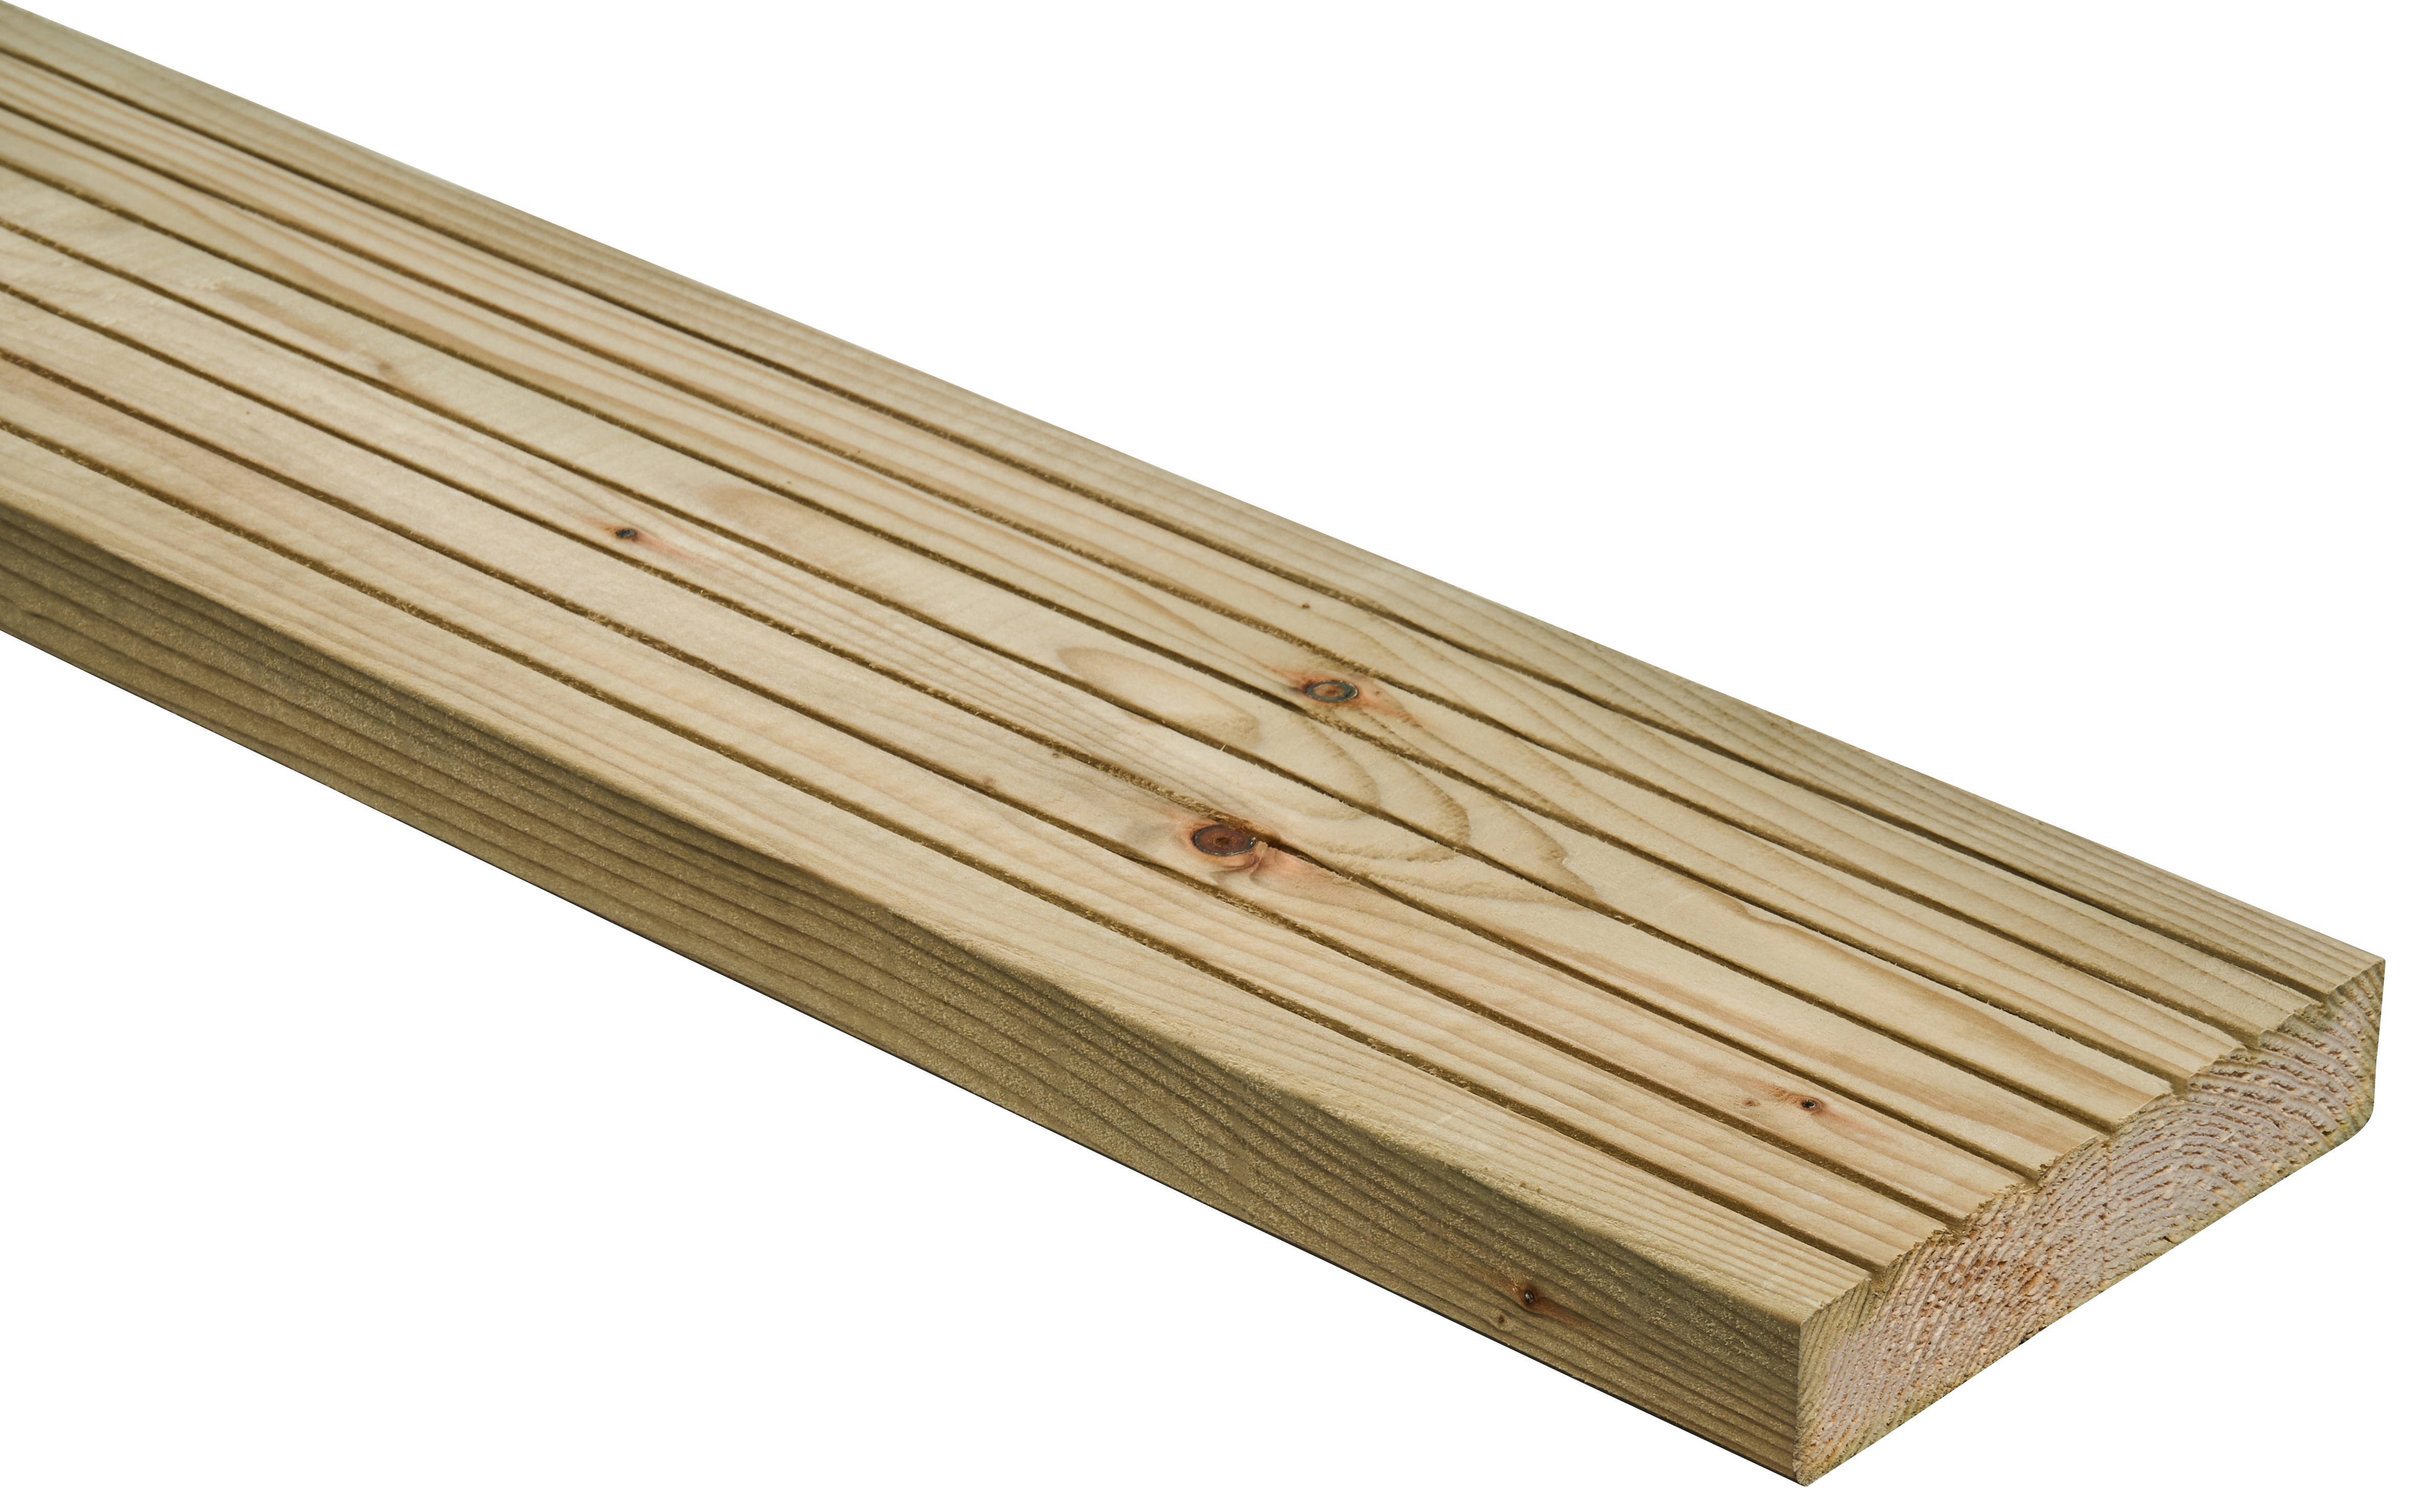 Wickes Standard Treated Deck Board - 25 x 120 x 2400mm